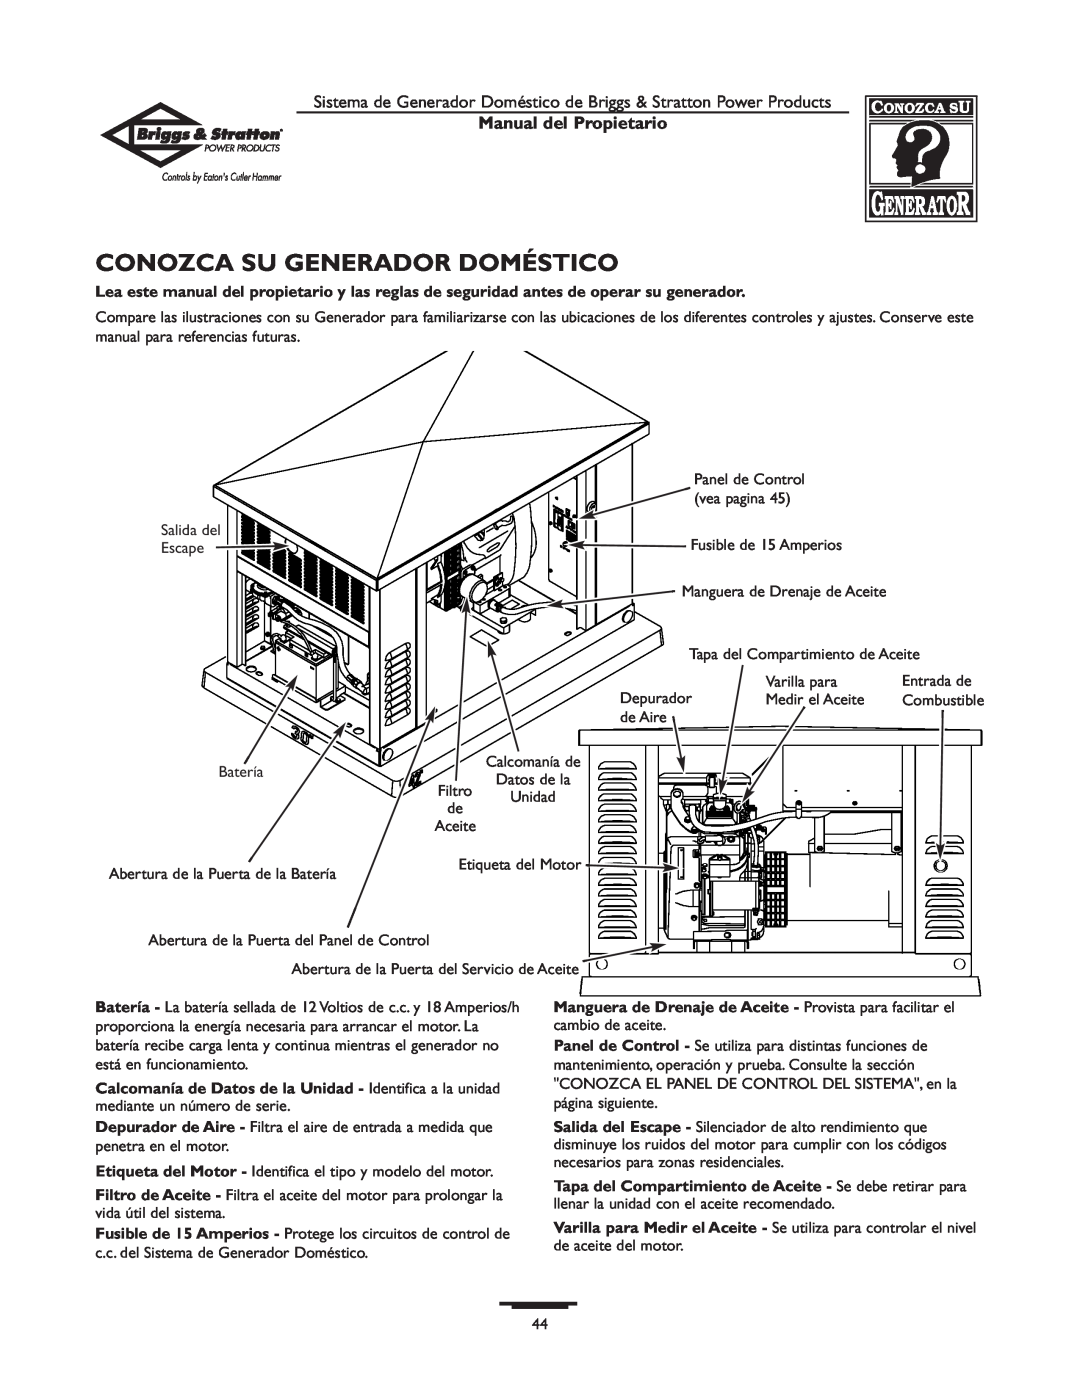 Briggs & Stratton 1679-0 owner manual Conozca Su Generador Doméstico, Manual del Propietario 